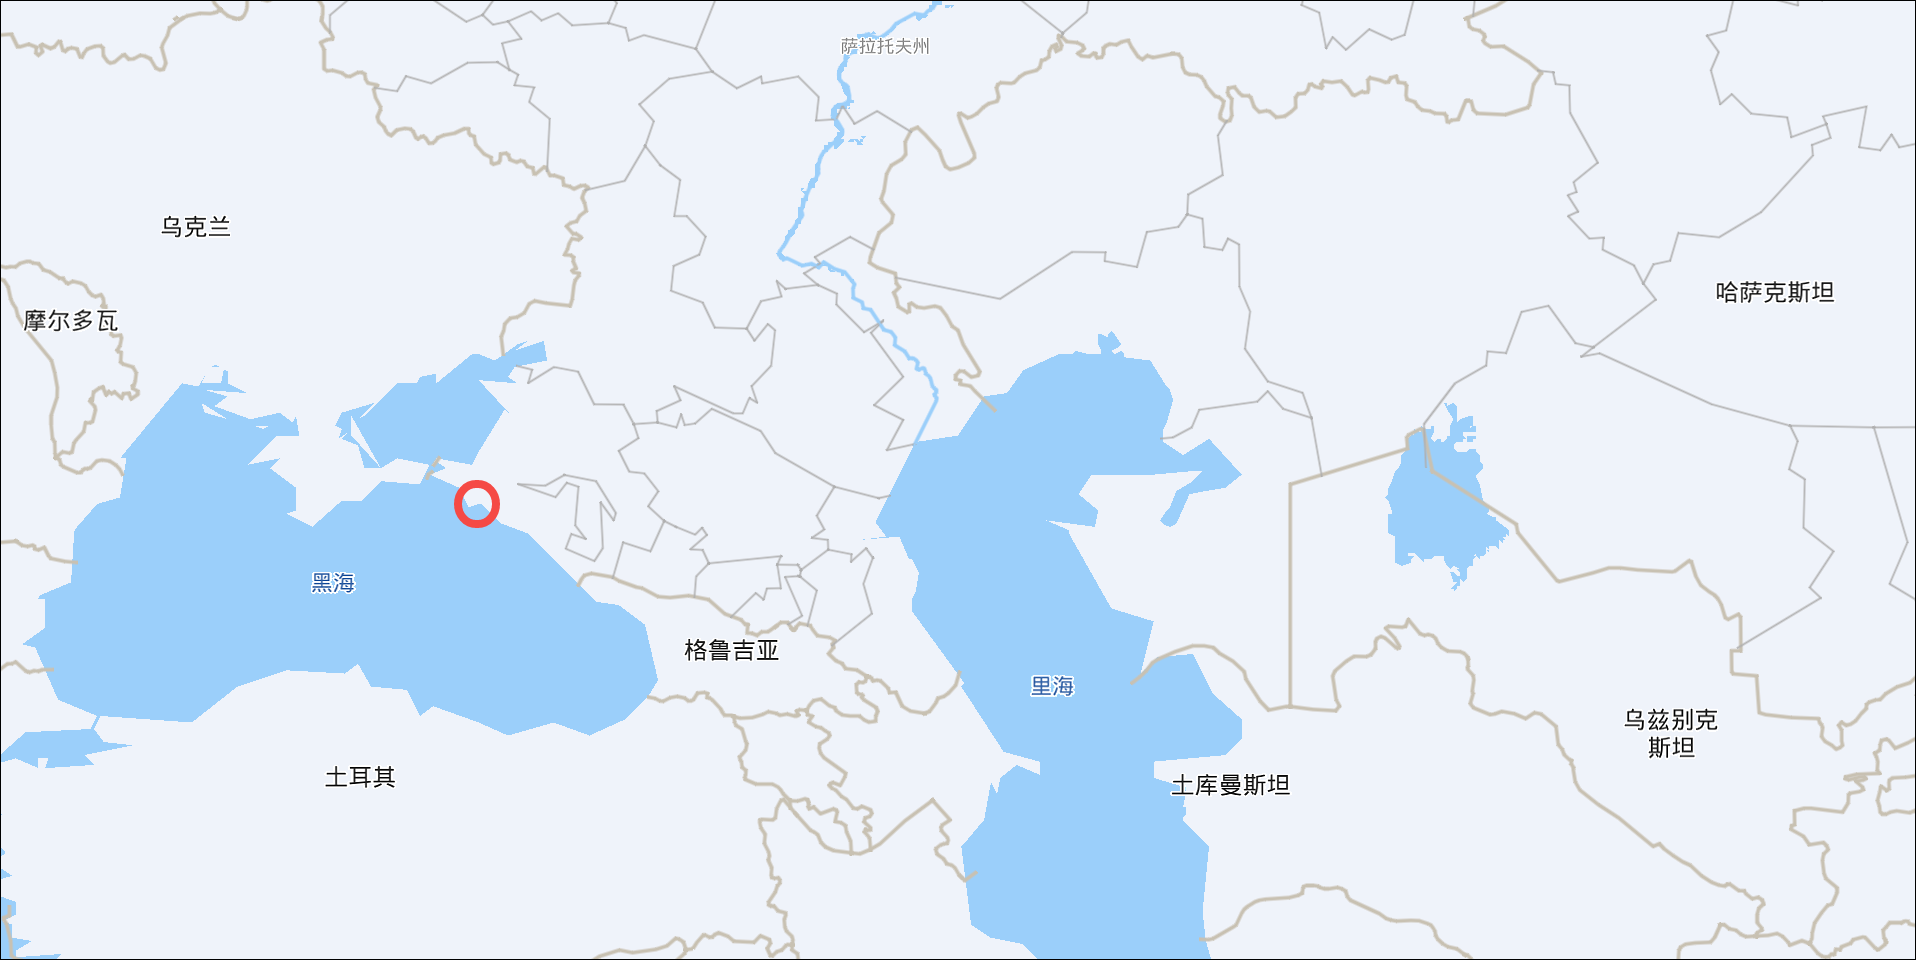 它位于俄罗斯黑海沿岸,是里海管道联盟输油线的西部终点(百度地图)